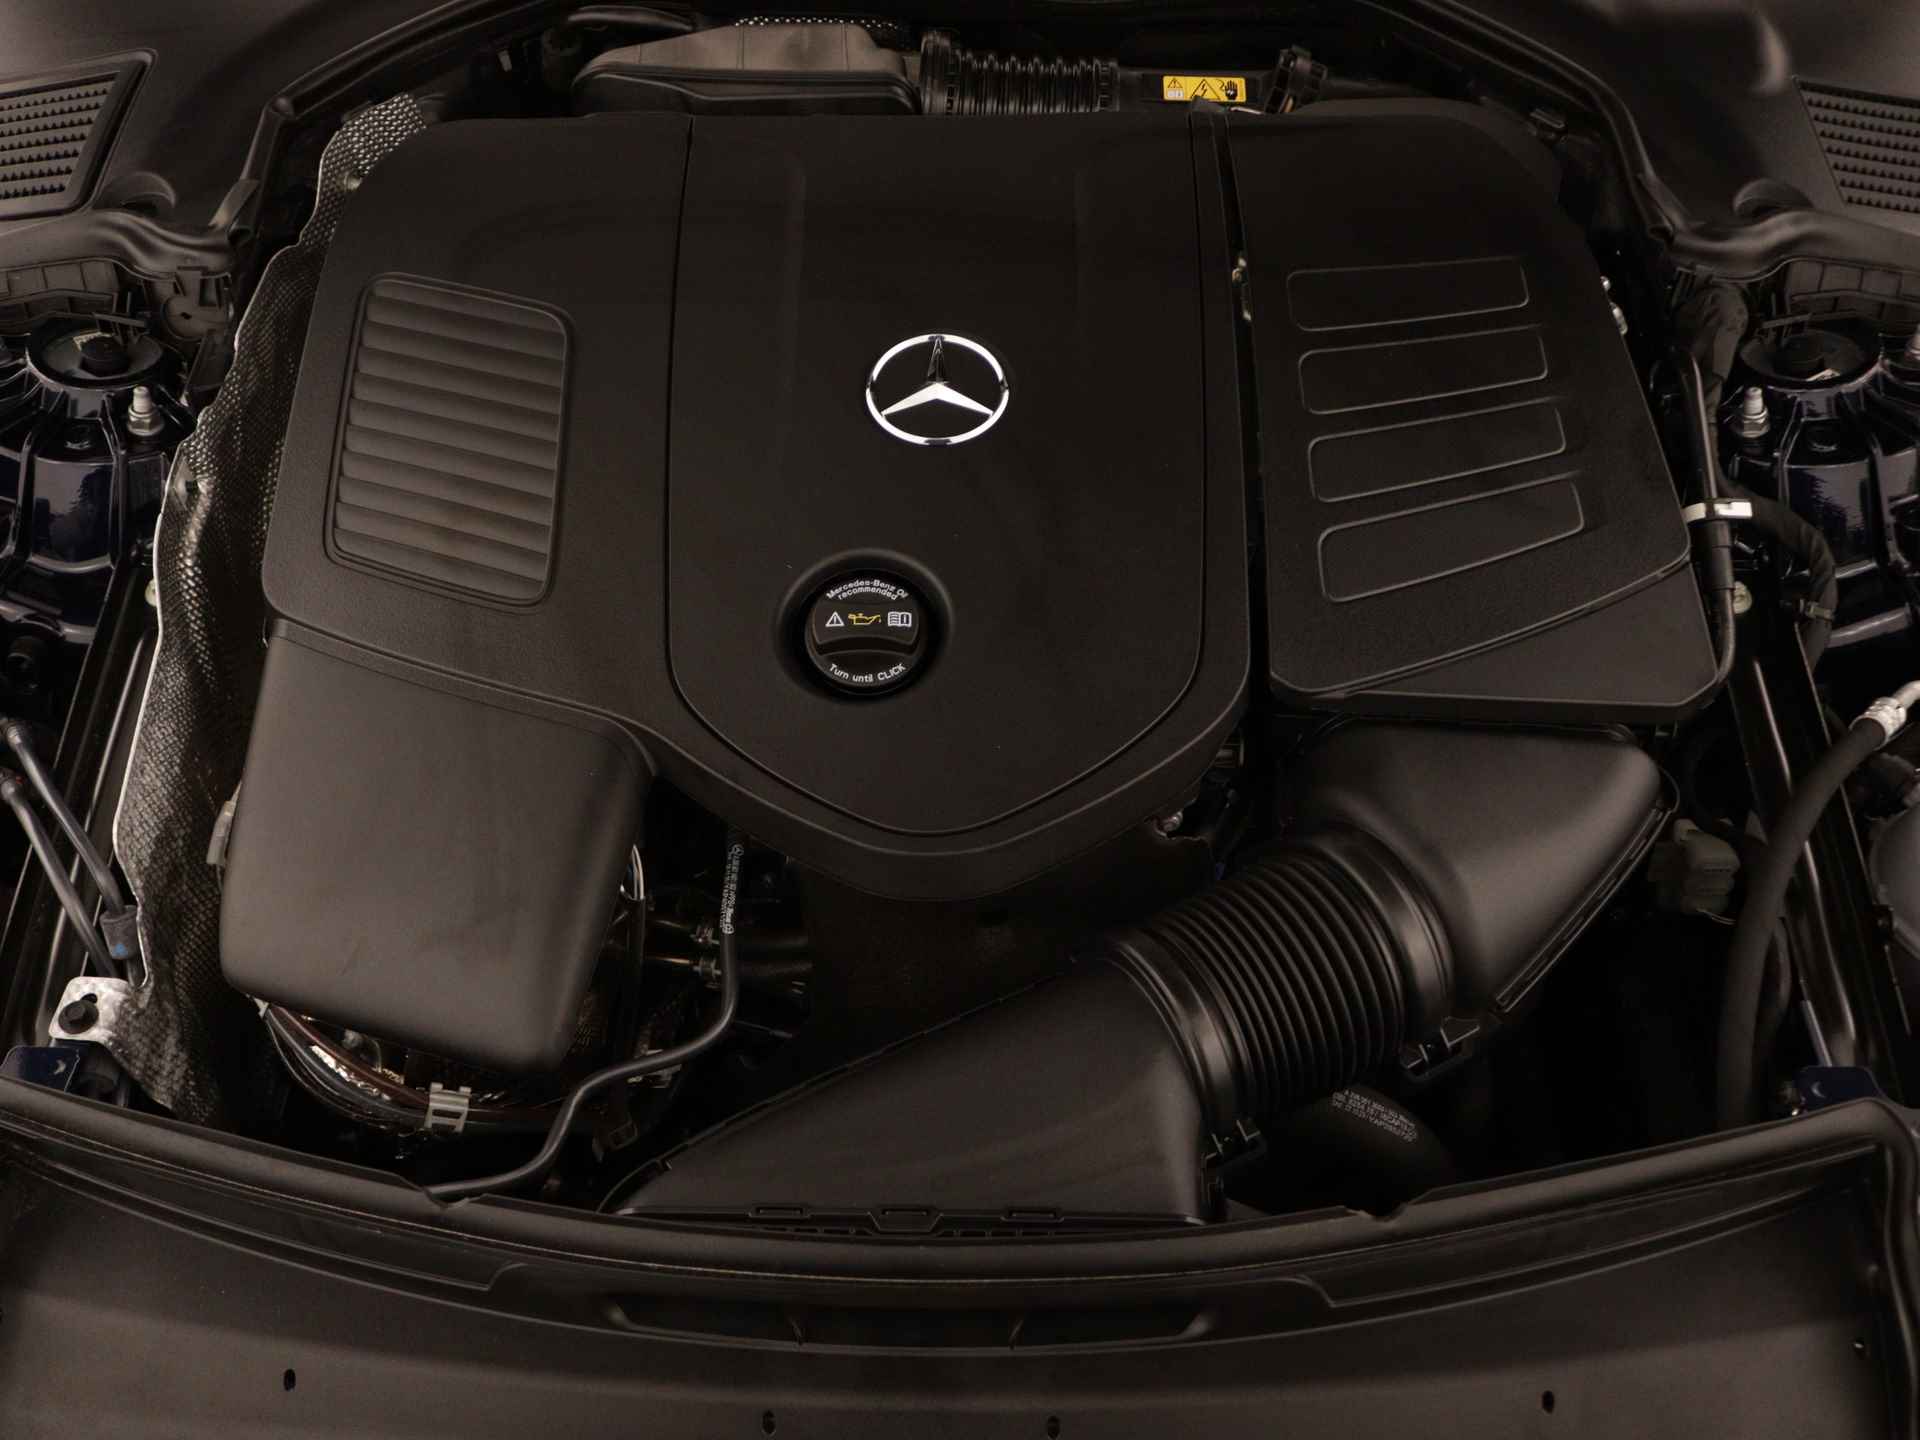 Mercedes-Benz C-Klasse Estate 180 AMG Line | Elektrische Trekhaak | Premium Plus pakket | Rijassistentiepakket Plus | Panoramadak | 24 maanden Certified Garantie - 35/39